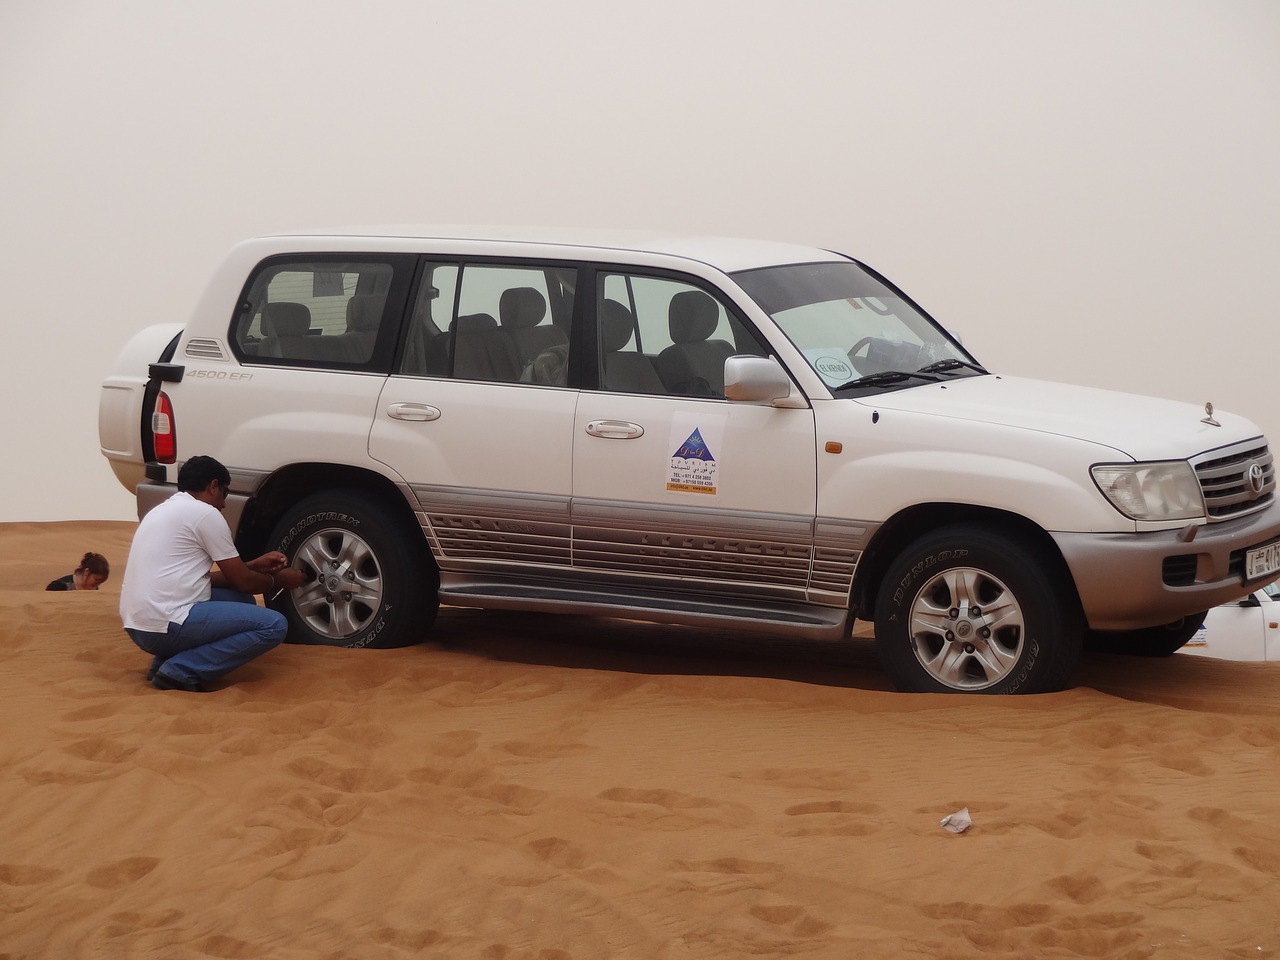 sahara desert sand free photo